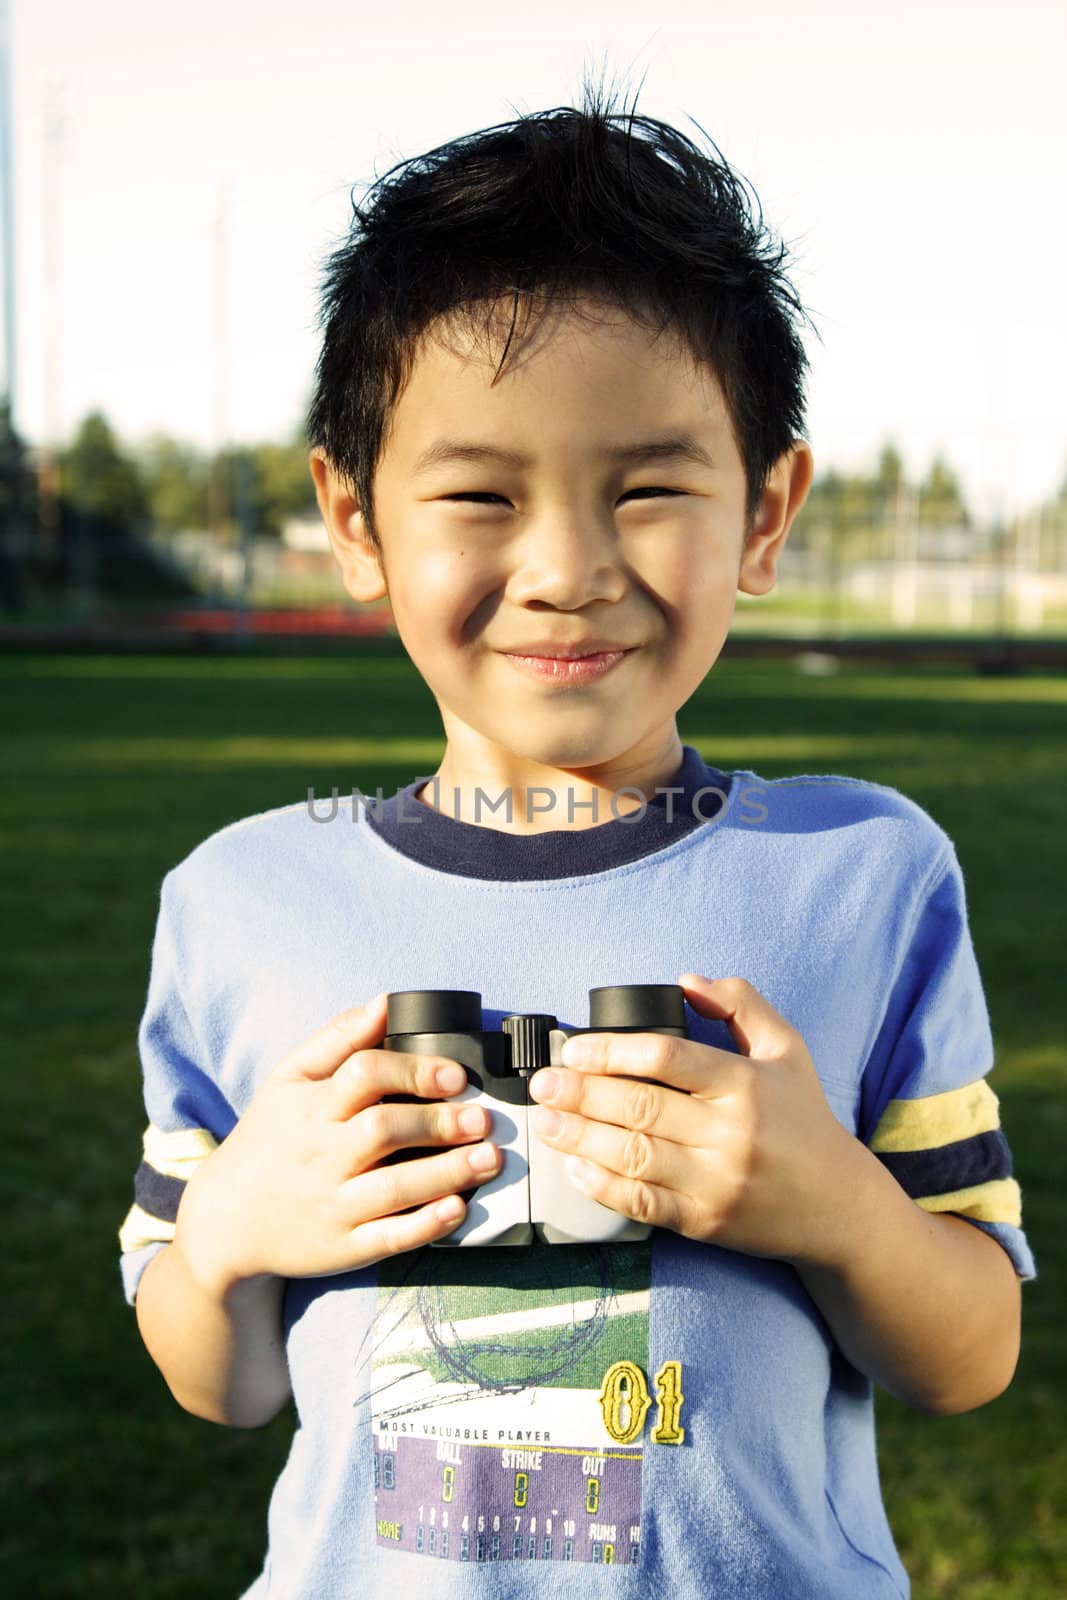 A boy having fun with binoculars